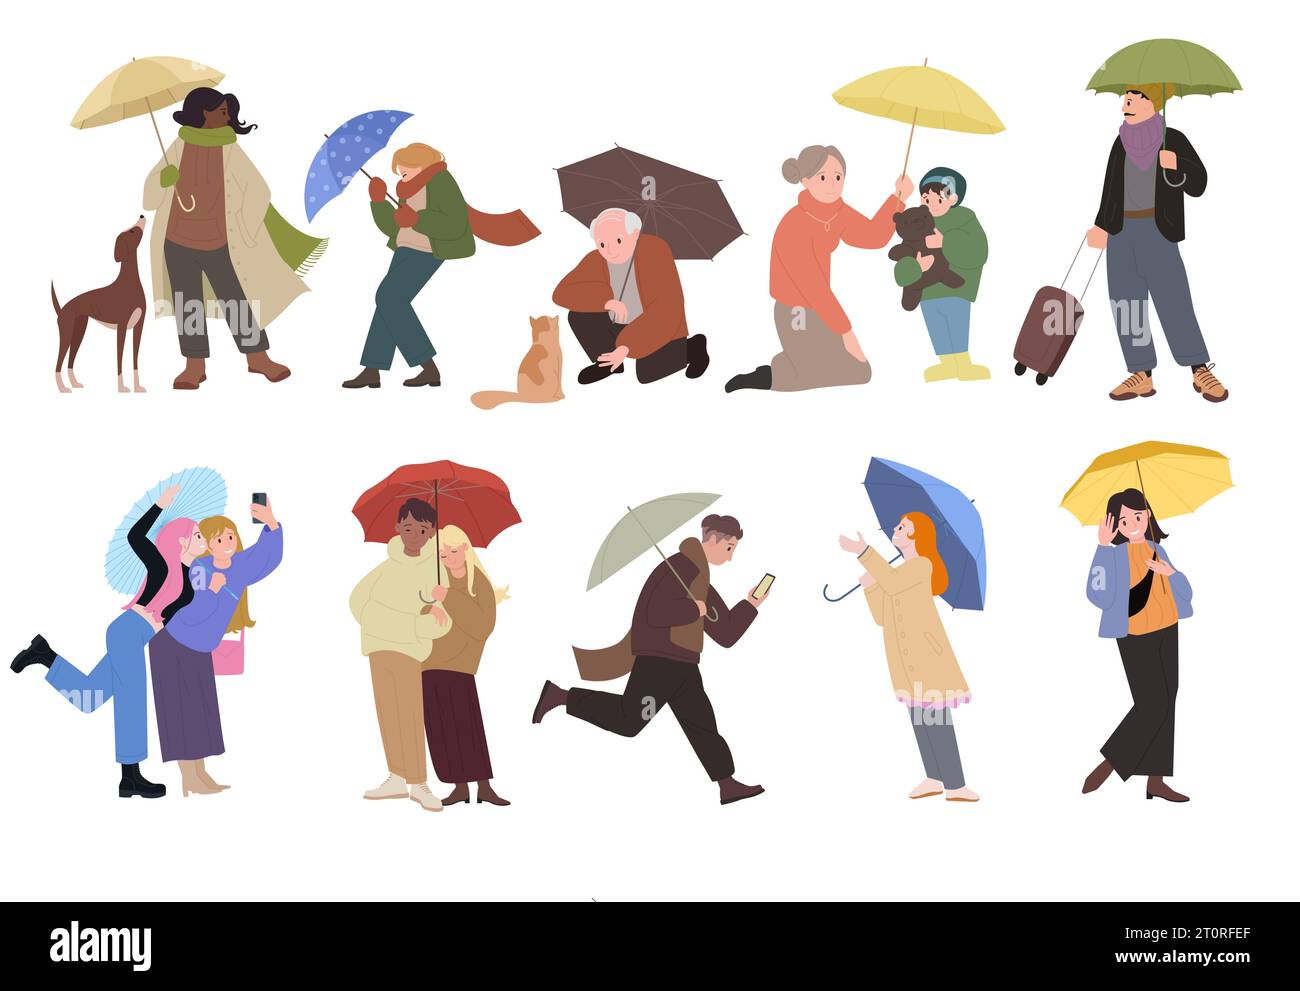 Personas sosteniendo paraguas para proteger de la lluvia conjunto ilustración vectorial. Hombre o mujer aislados de dibujos animados caminando en tiempo lluvioso, colección de varios personajes adultos y niños con sombrillas húmedas Ilustración del Vector